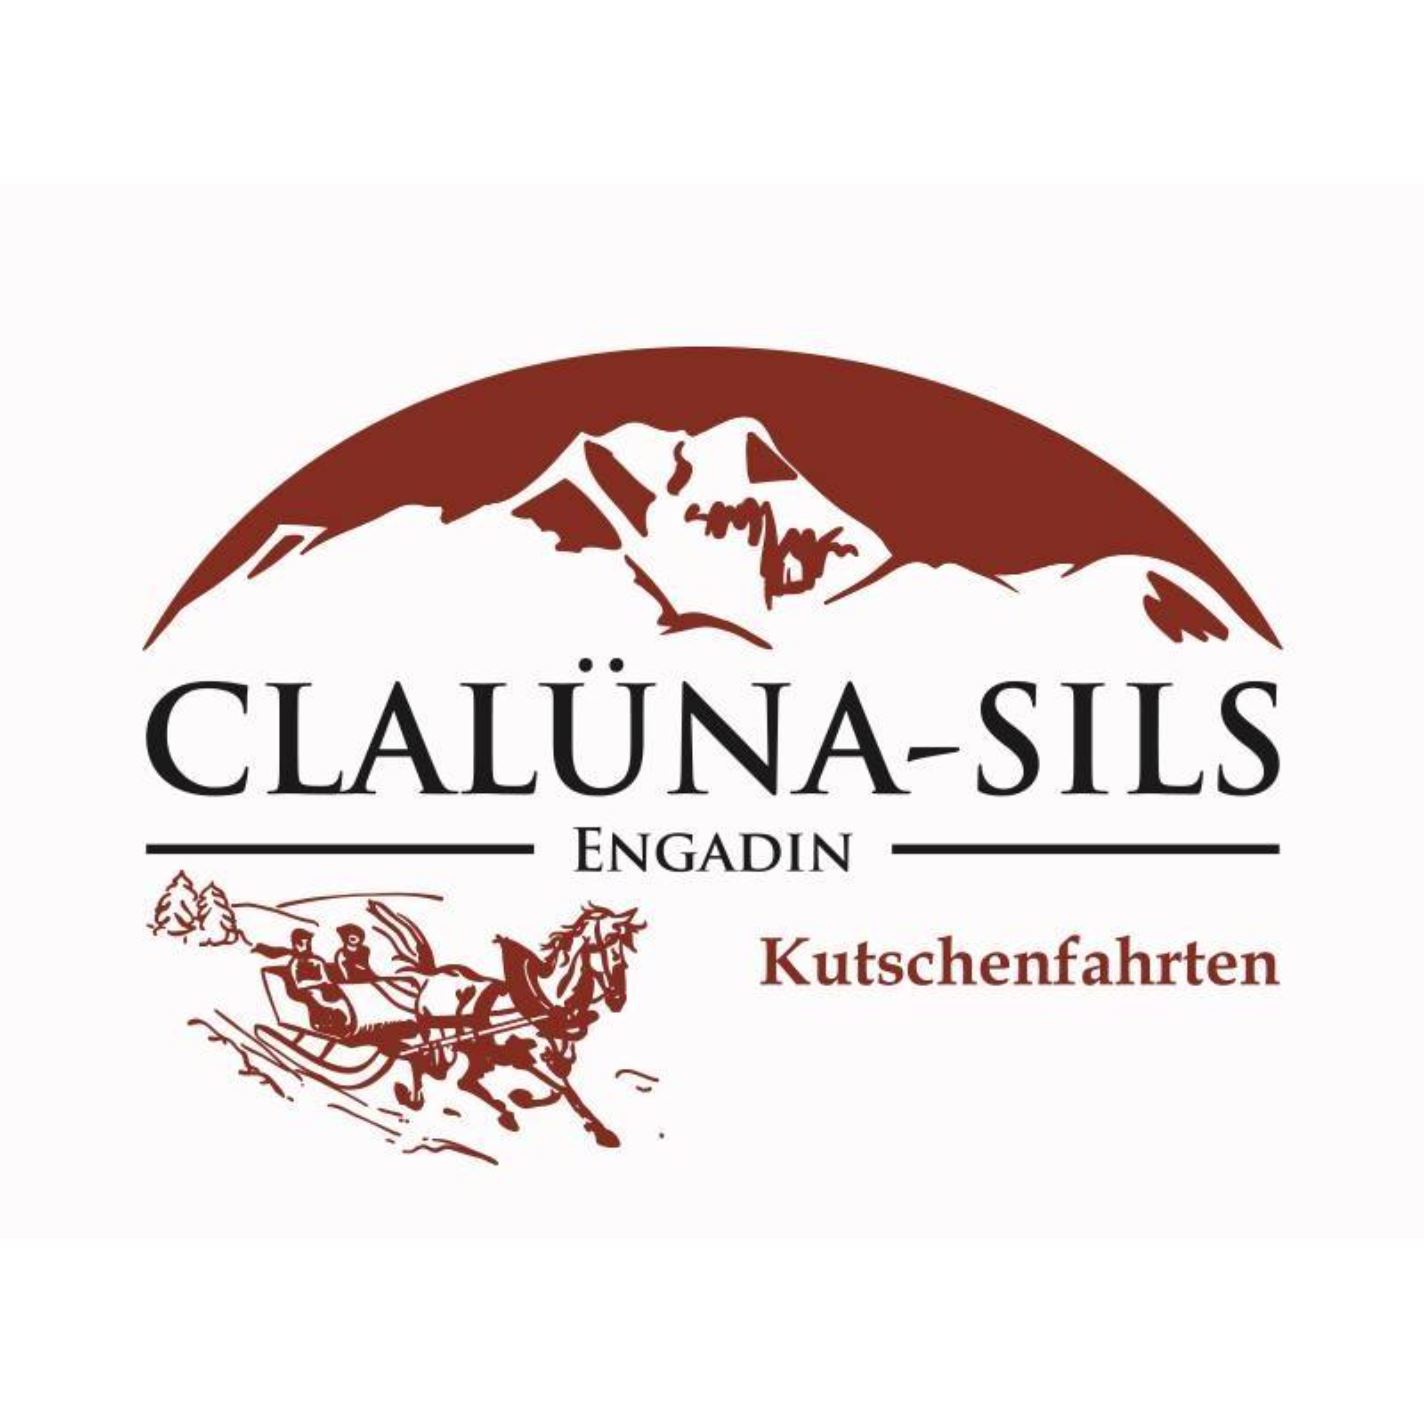 Clalüna-Sils Kutschenfahrten Logo